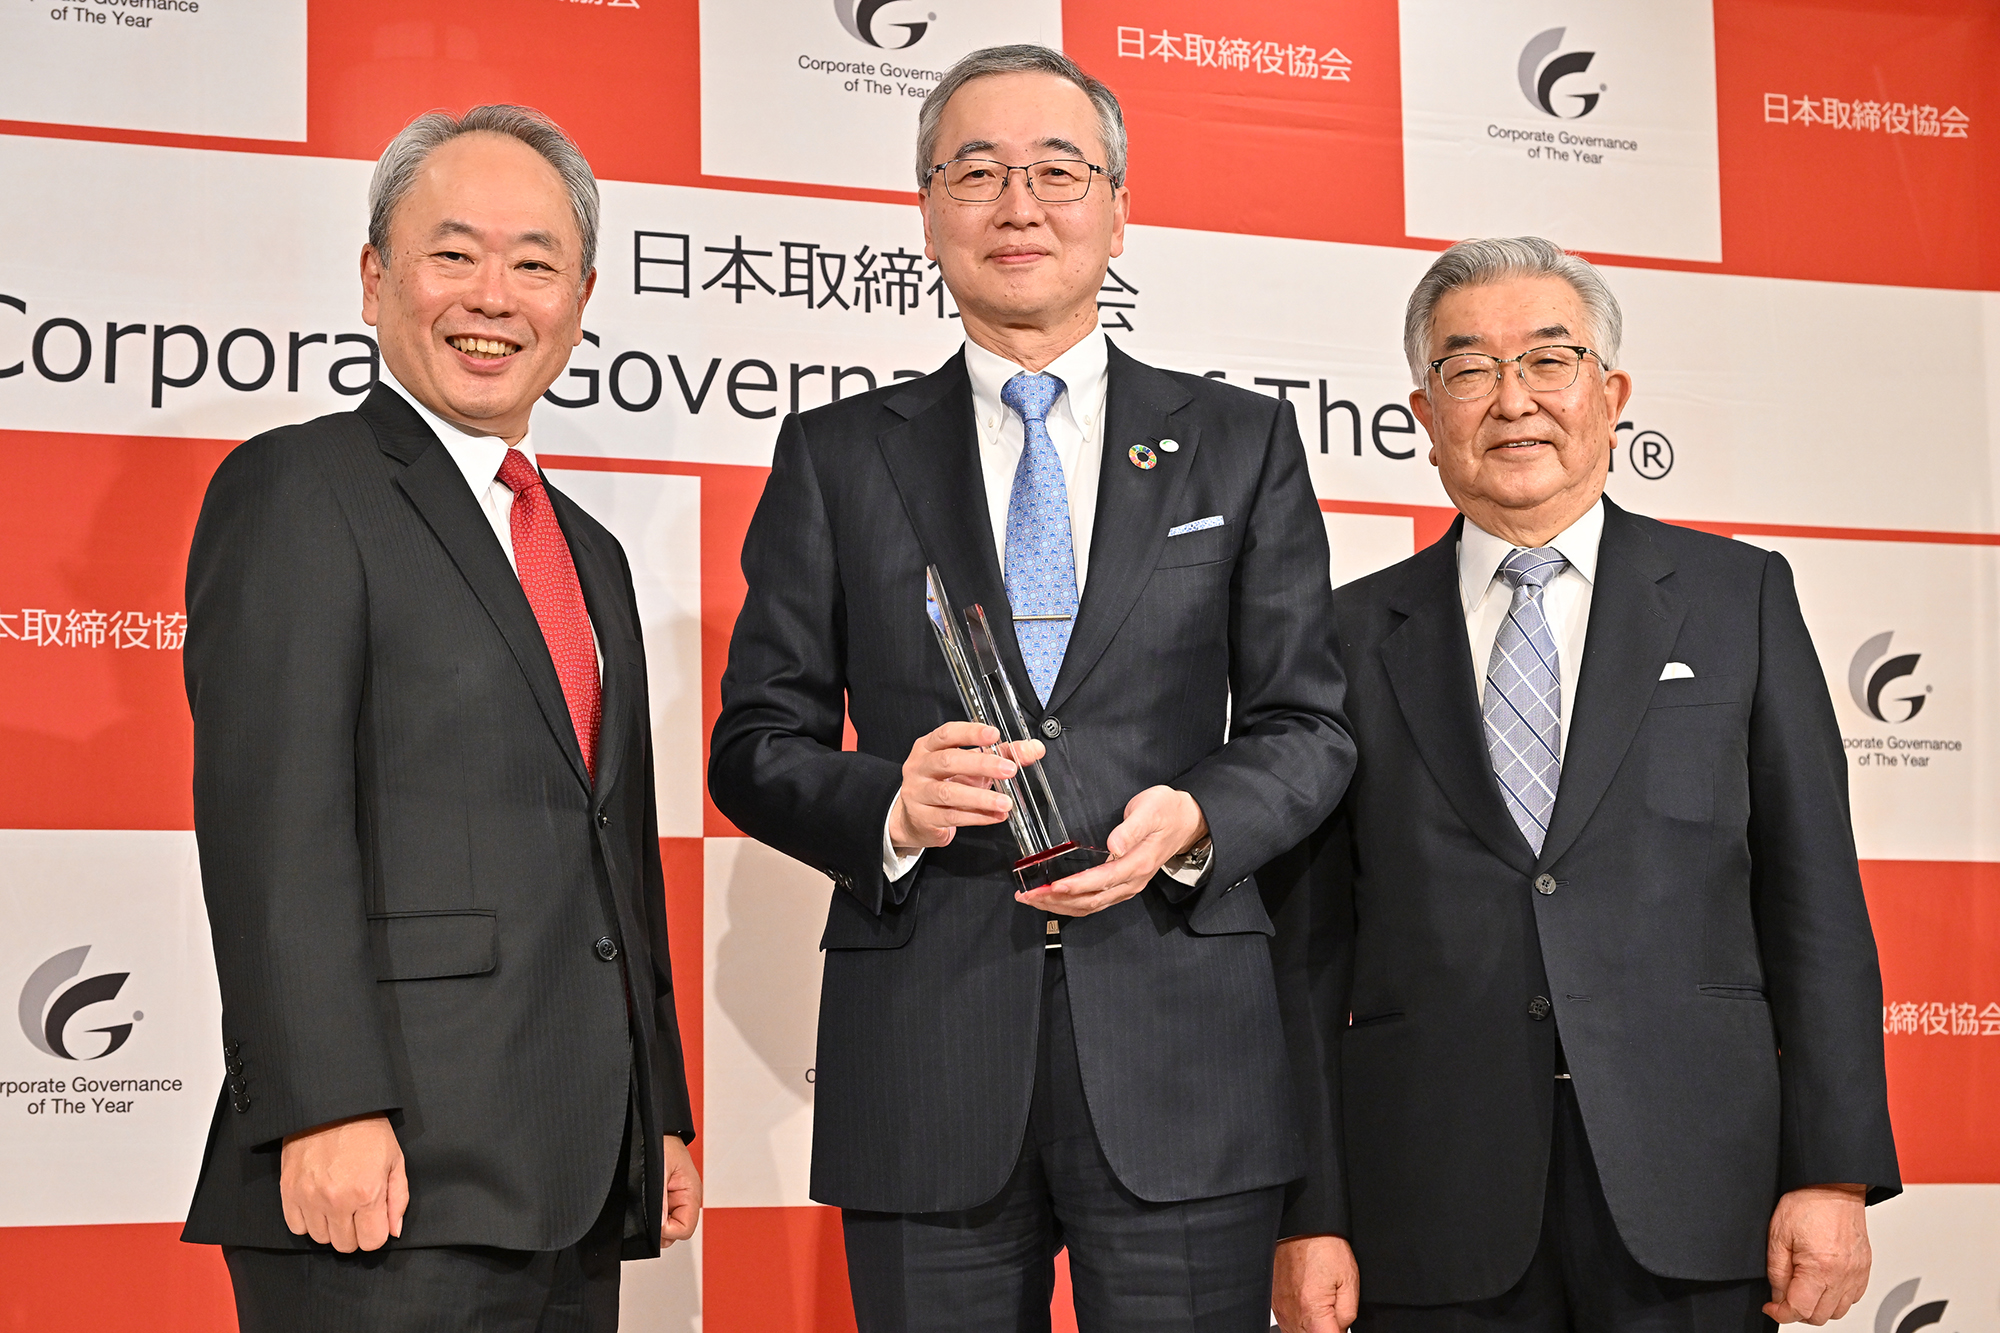 中央に小島啓二様、左にプレゼンターの冨山和彦、右に審査委員長の斉藤惇様